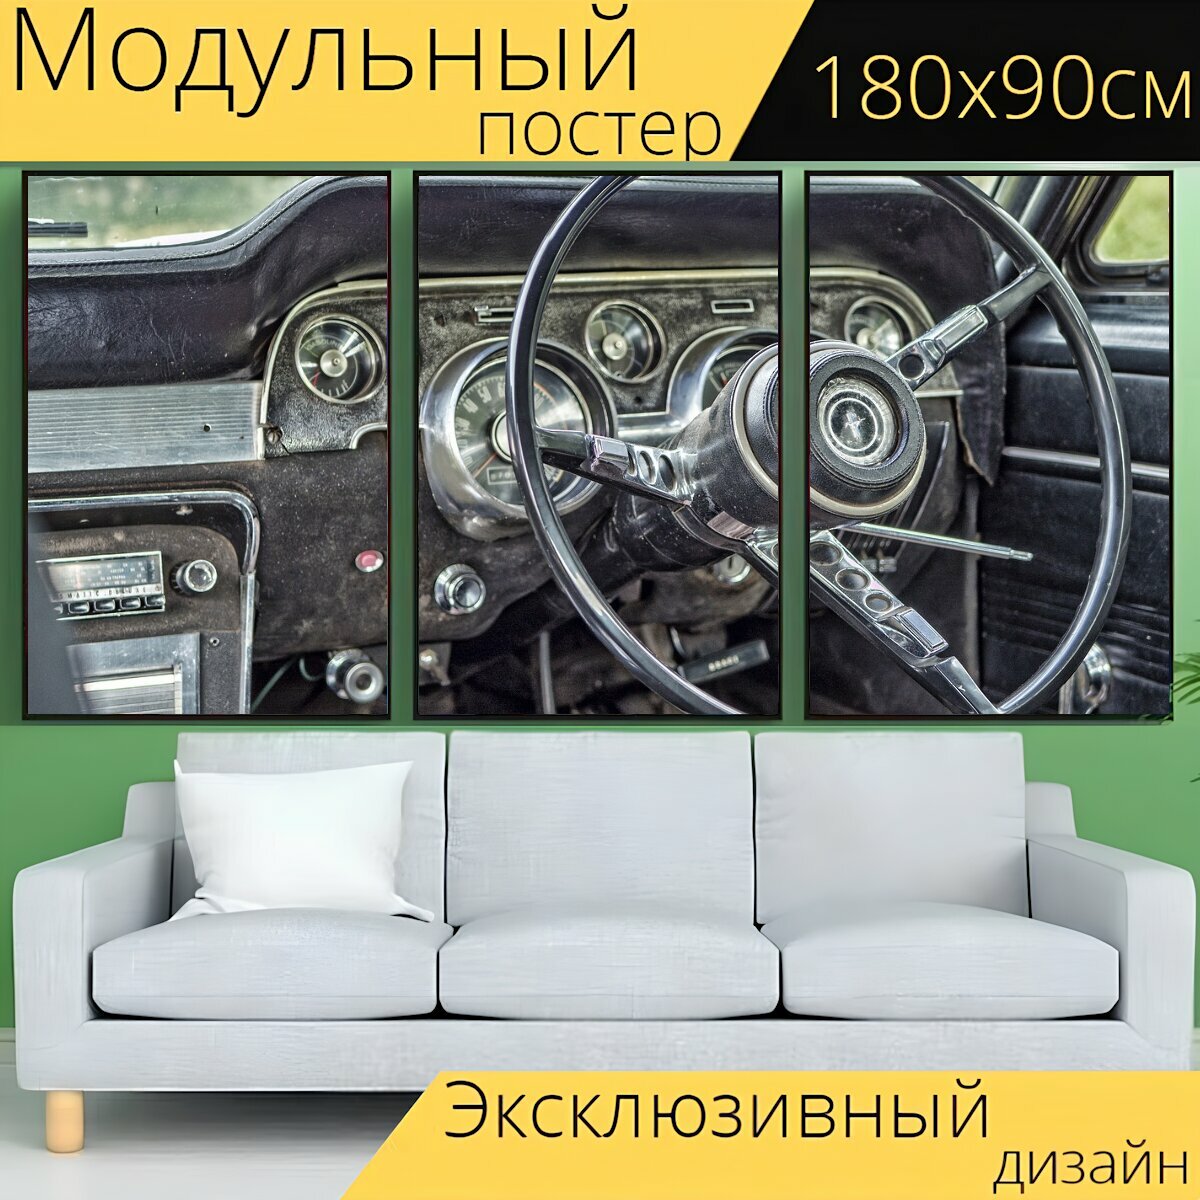 Модульный постер "Рулевое колесо, машина, старый" 180 x 90 см. для интерьера